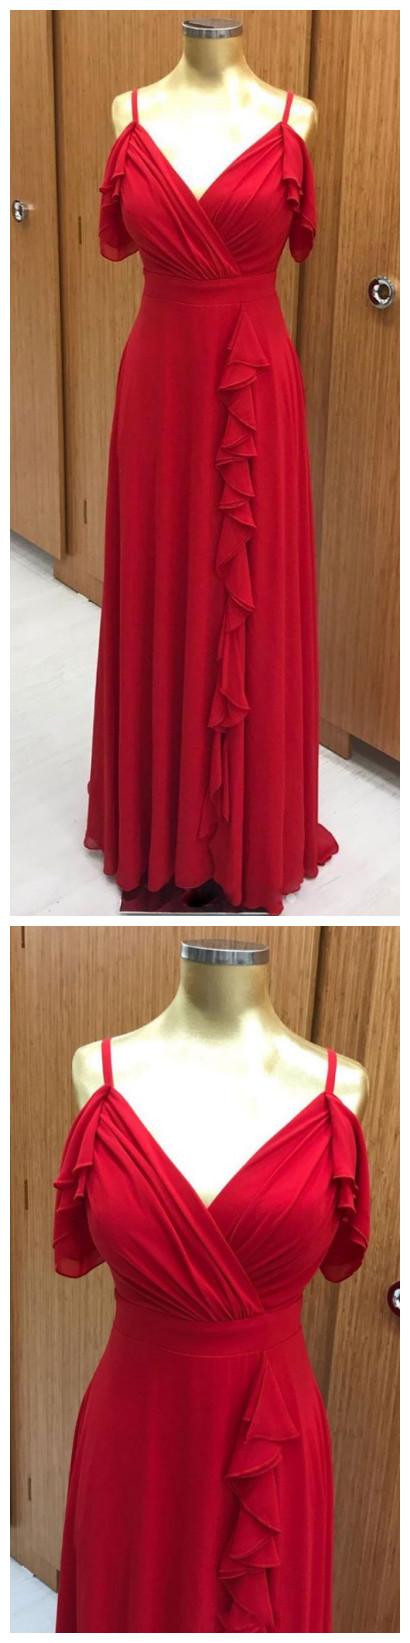 Red Chiffon Long Prom Dress, Red Chiffon Evening Dress